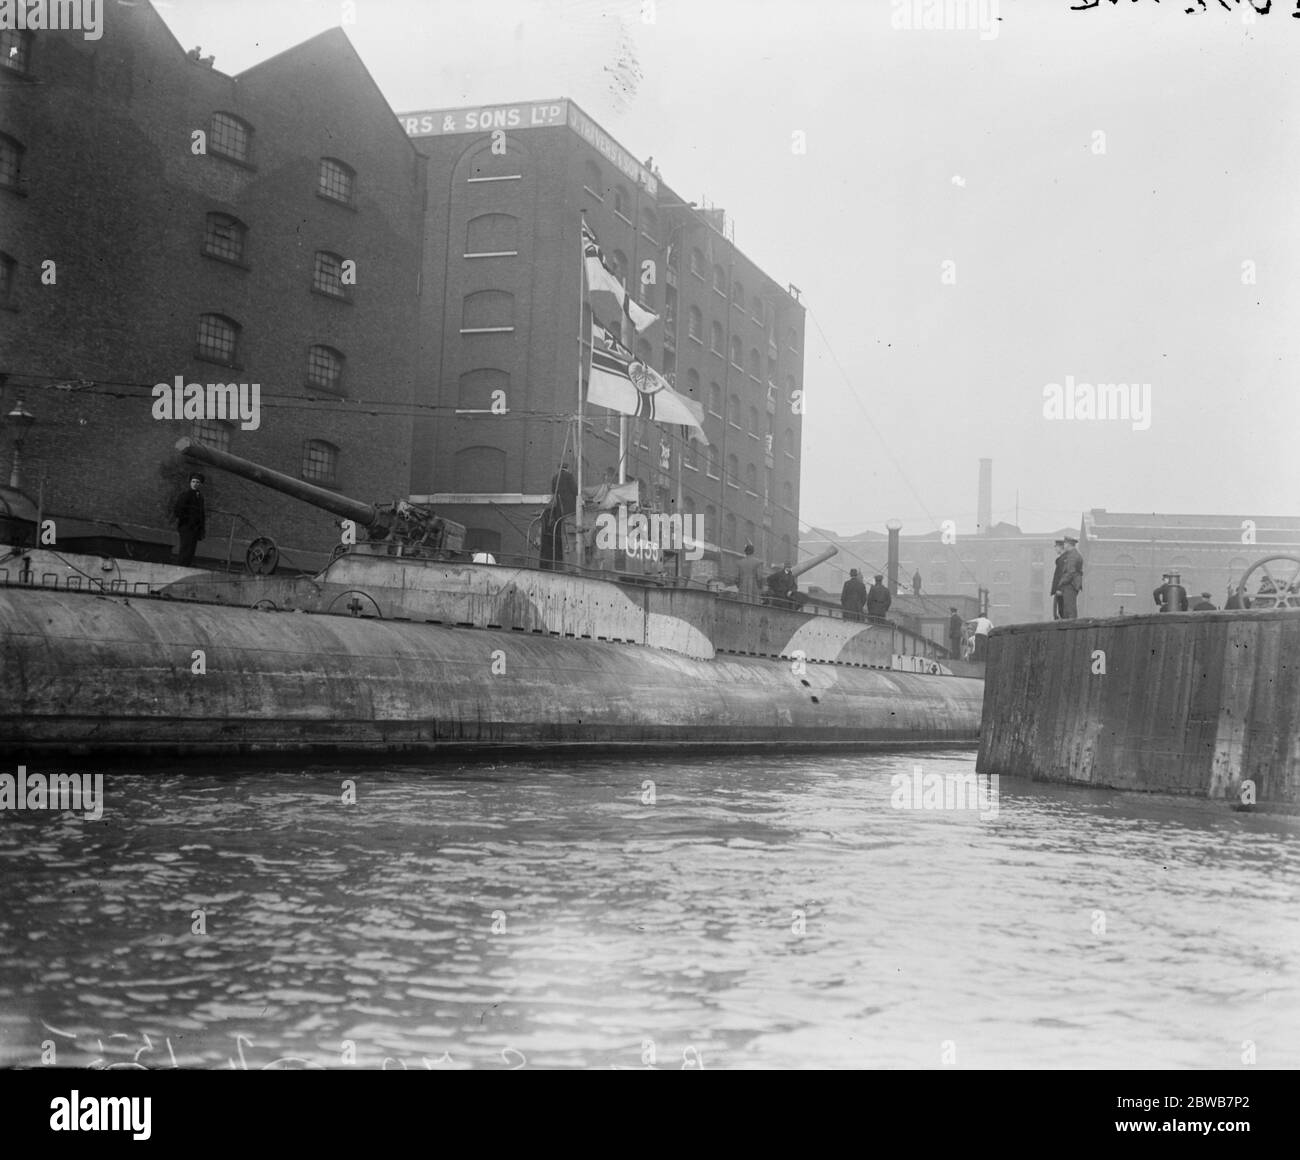 Capitula sous-marin allemand dans la Tamise . L'amarrage de l'U 155 au quai de Sainte Catherine près du pont Tower Bridge , 1919 Banque D'Images